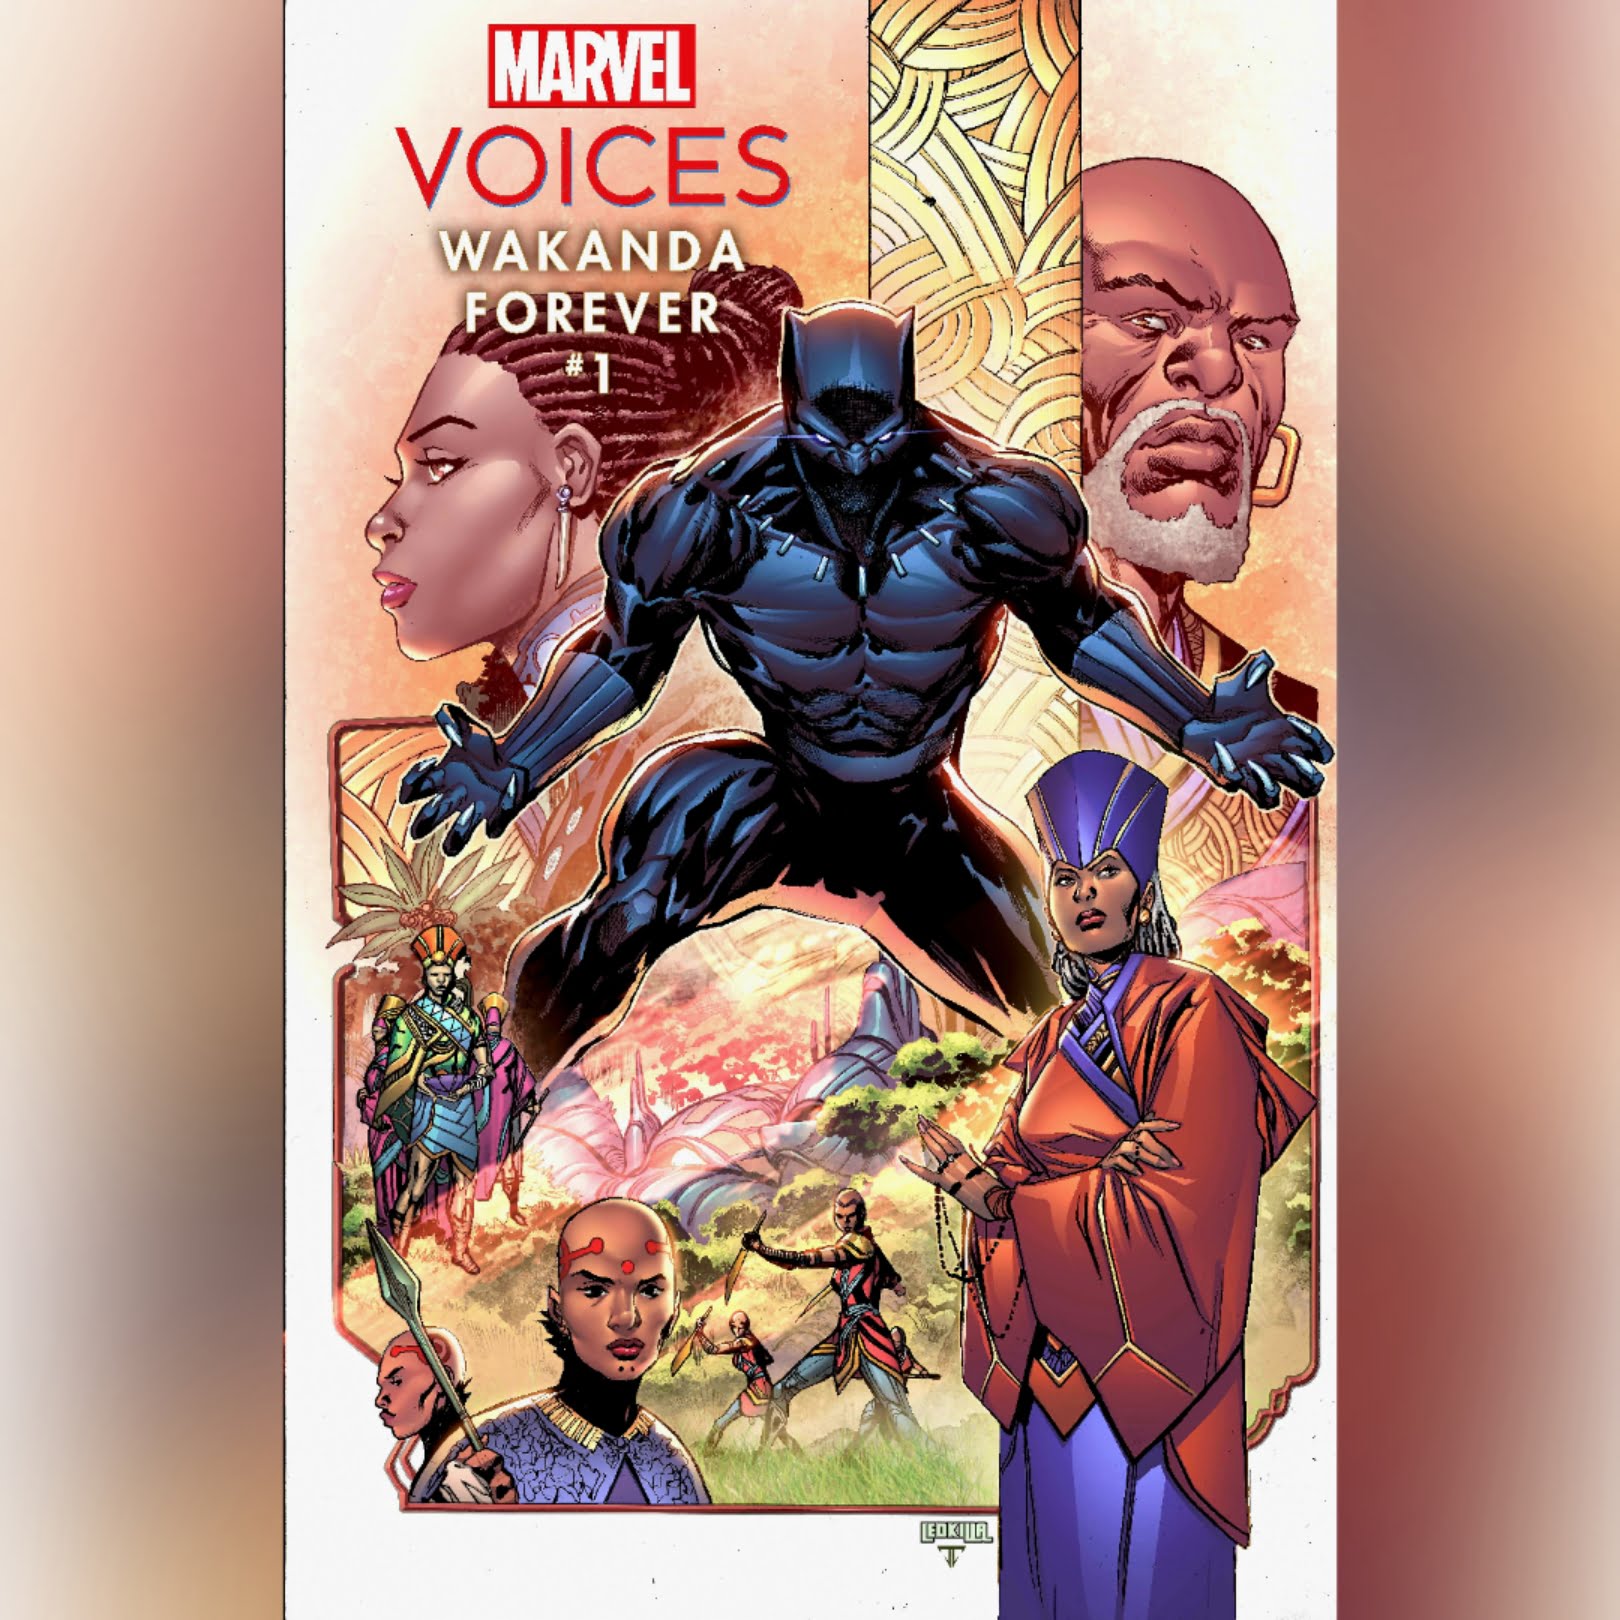 Marvel's Voices Wakanda Fovever at New York Comic Con via 360 MAGAZINE. 